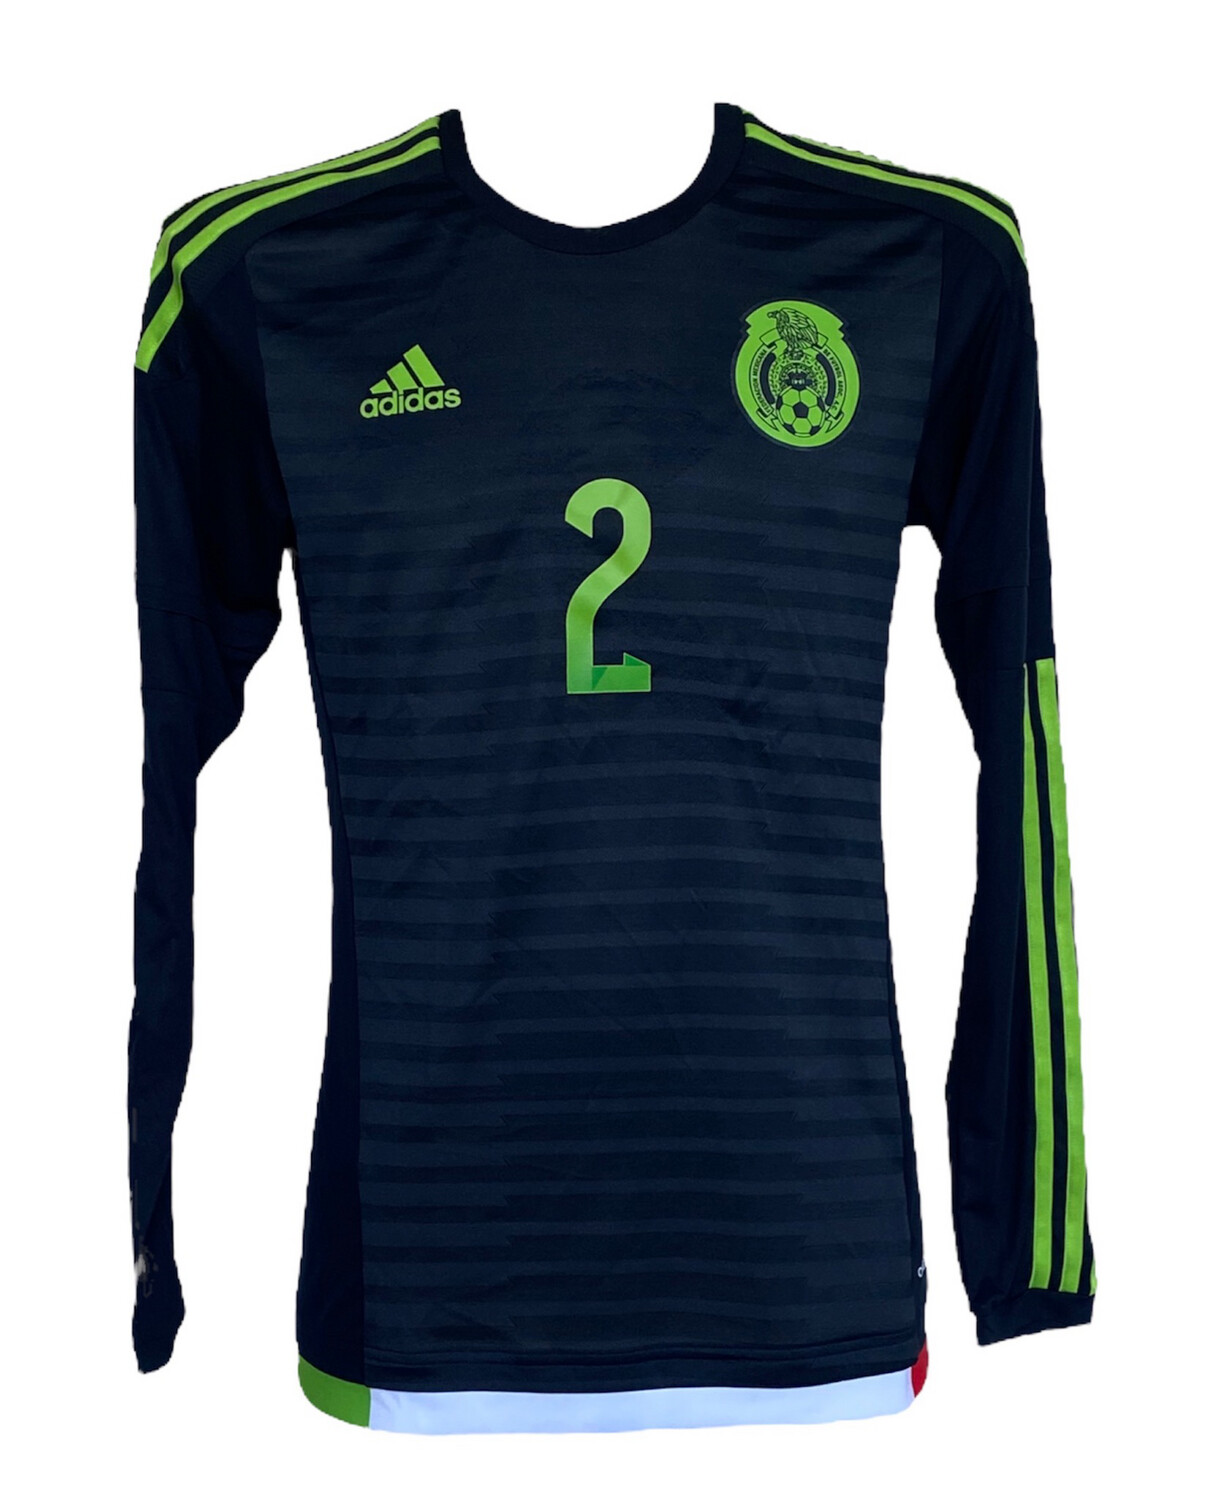 Mexique Adidas Carlos Guzman U21 2016